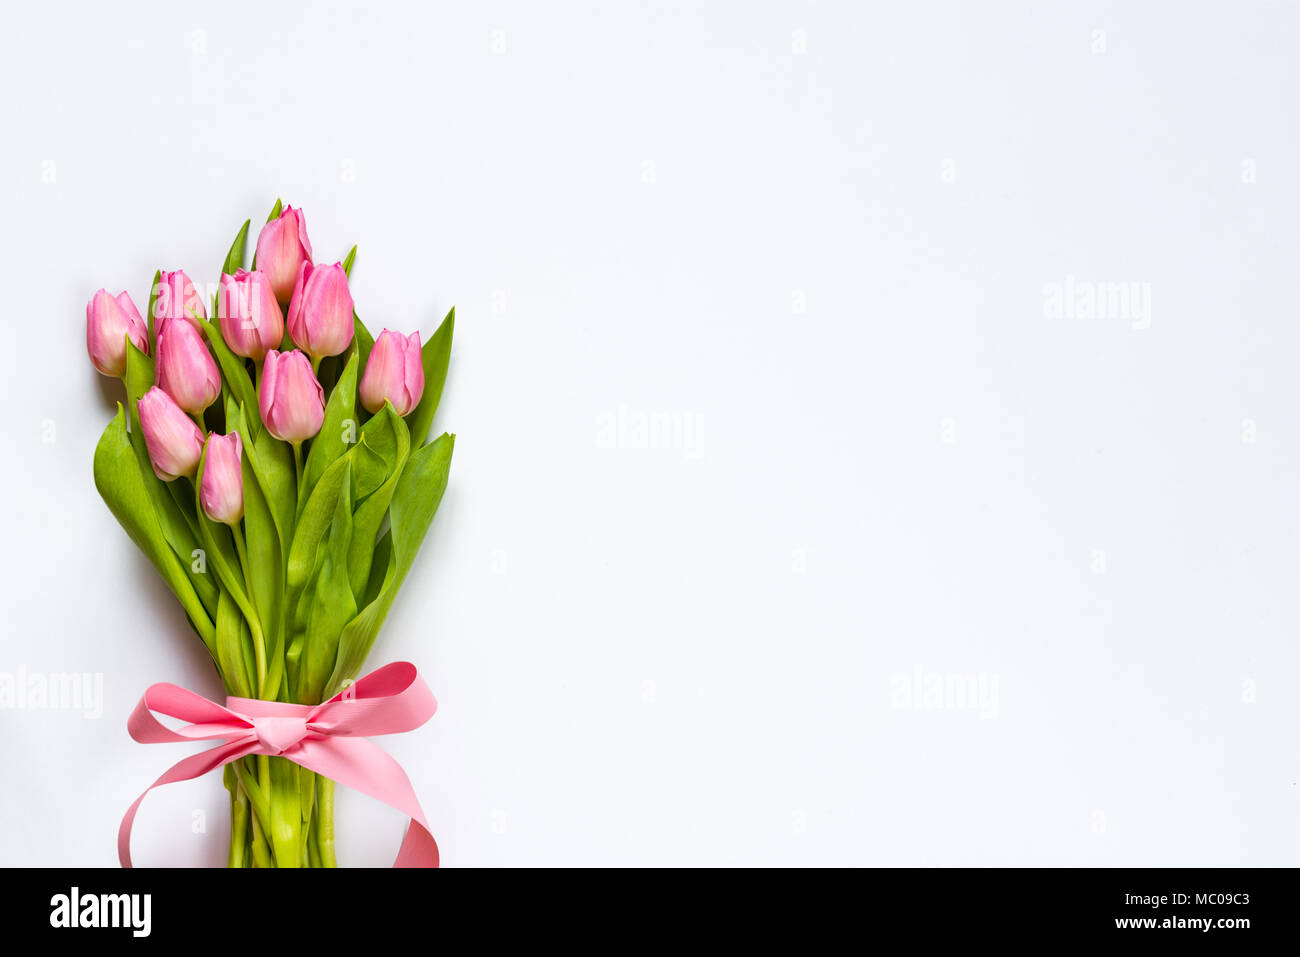 Vue de dessus de tulipes roses bouquet, enveloppés de ruban rose sur fond blanc. Copier l'espace. Banque D'Images